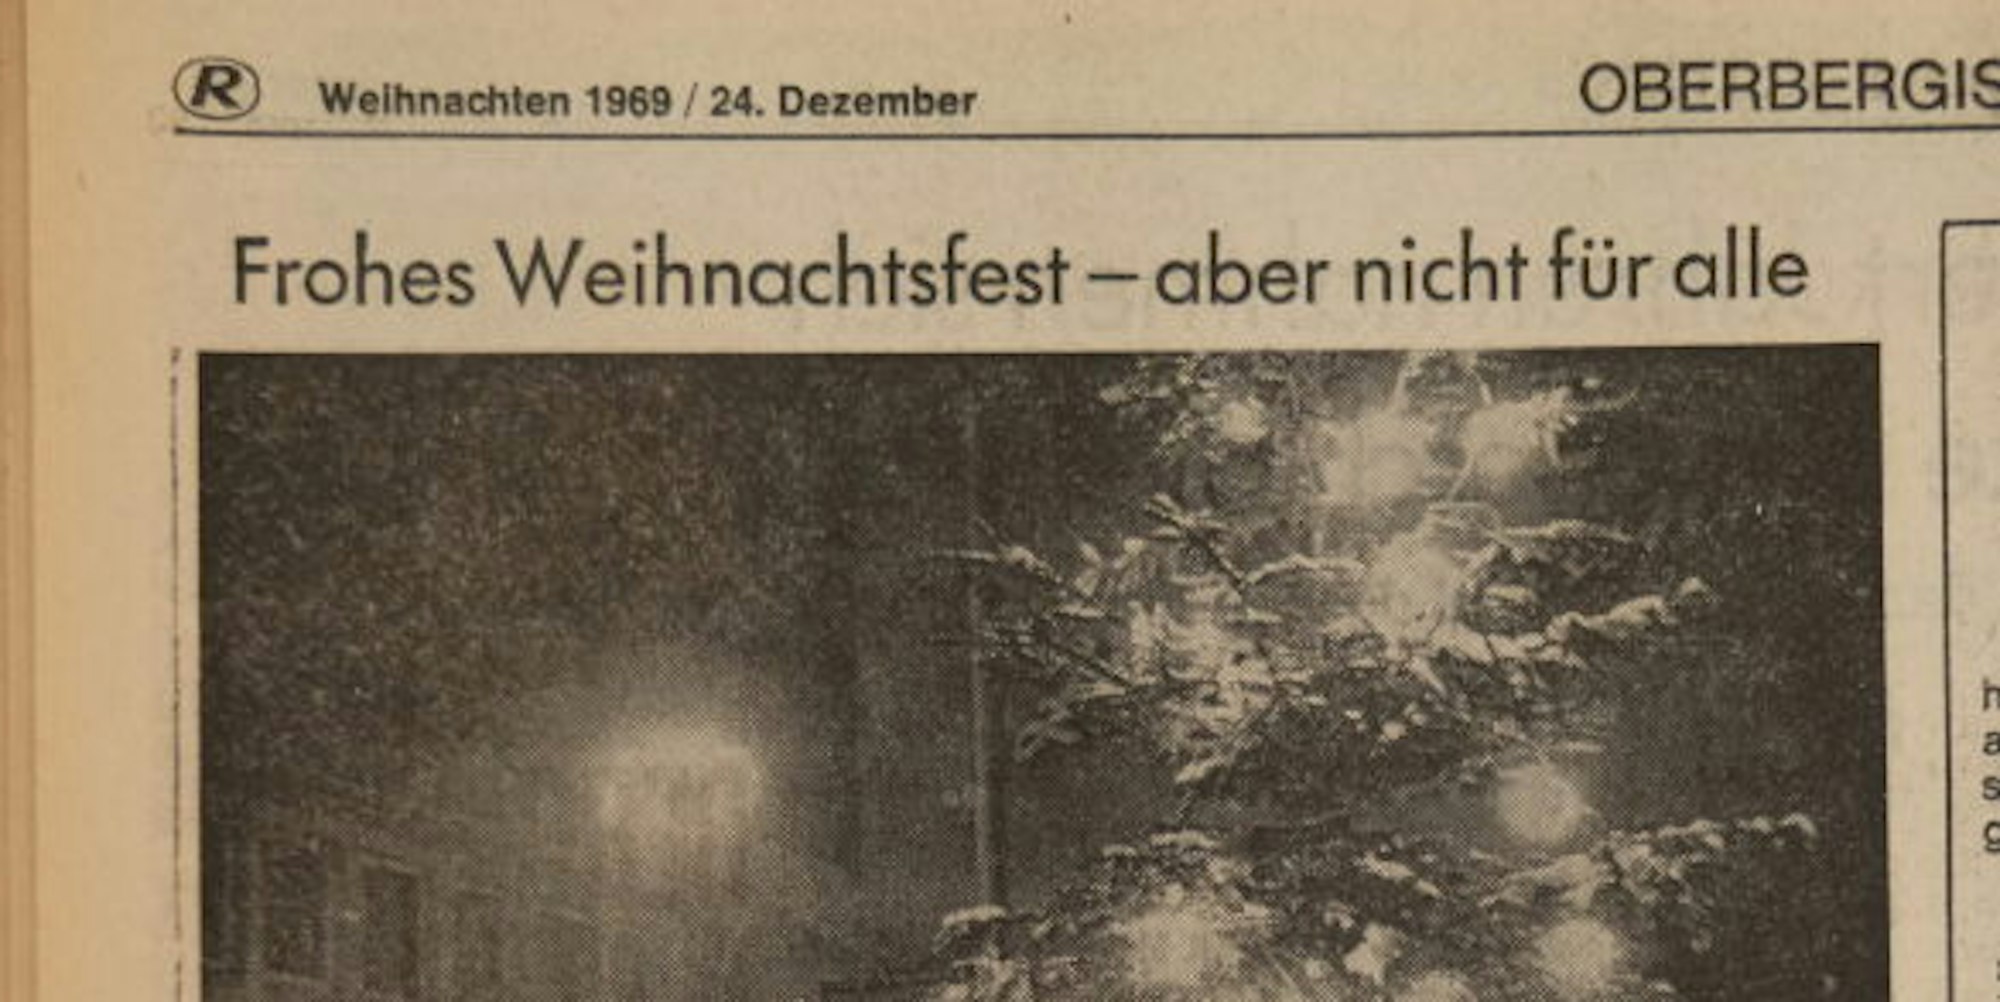 Nachdenkliche Worte fand die Redaktion in der Ausgabe der Lokalzeitung, die am Heiligen Abend des Jahres 1969, also vor 50 Jahren, erschien.